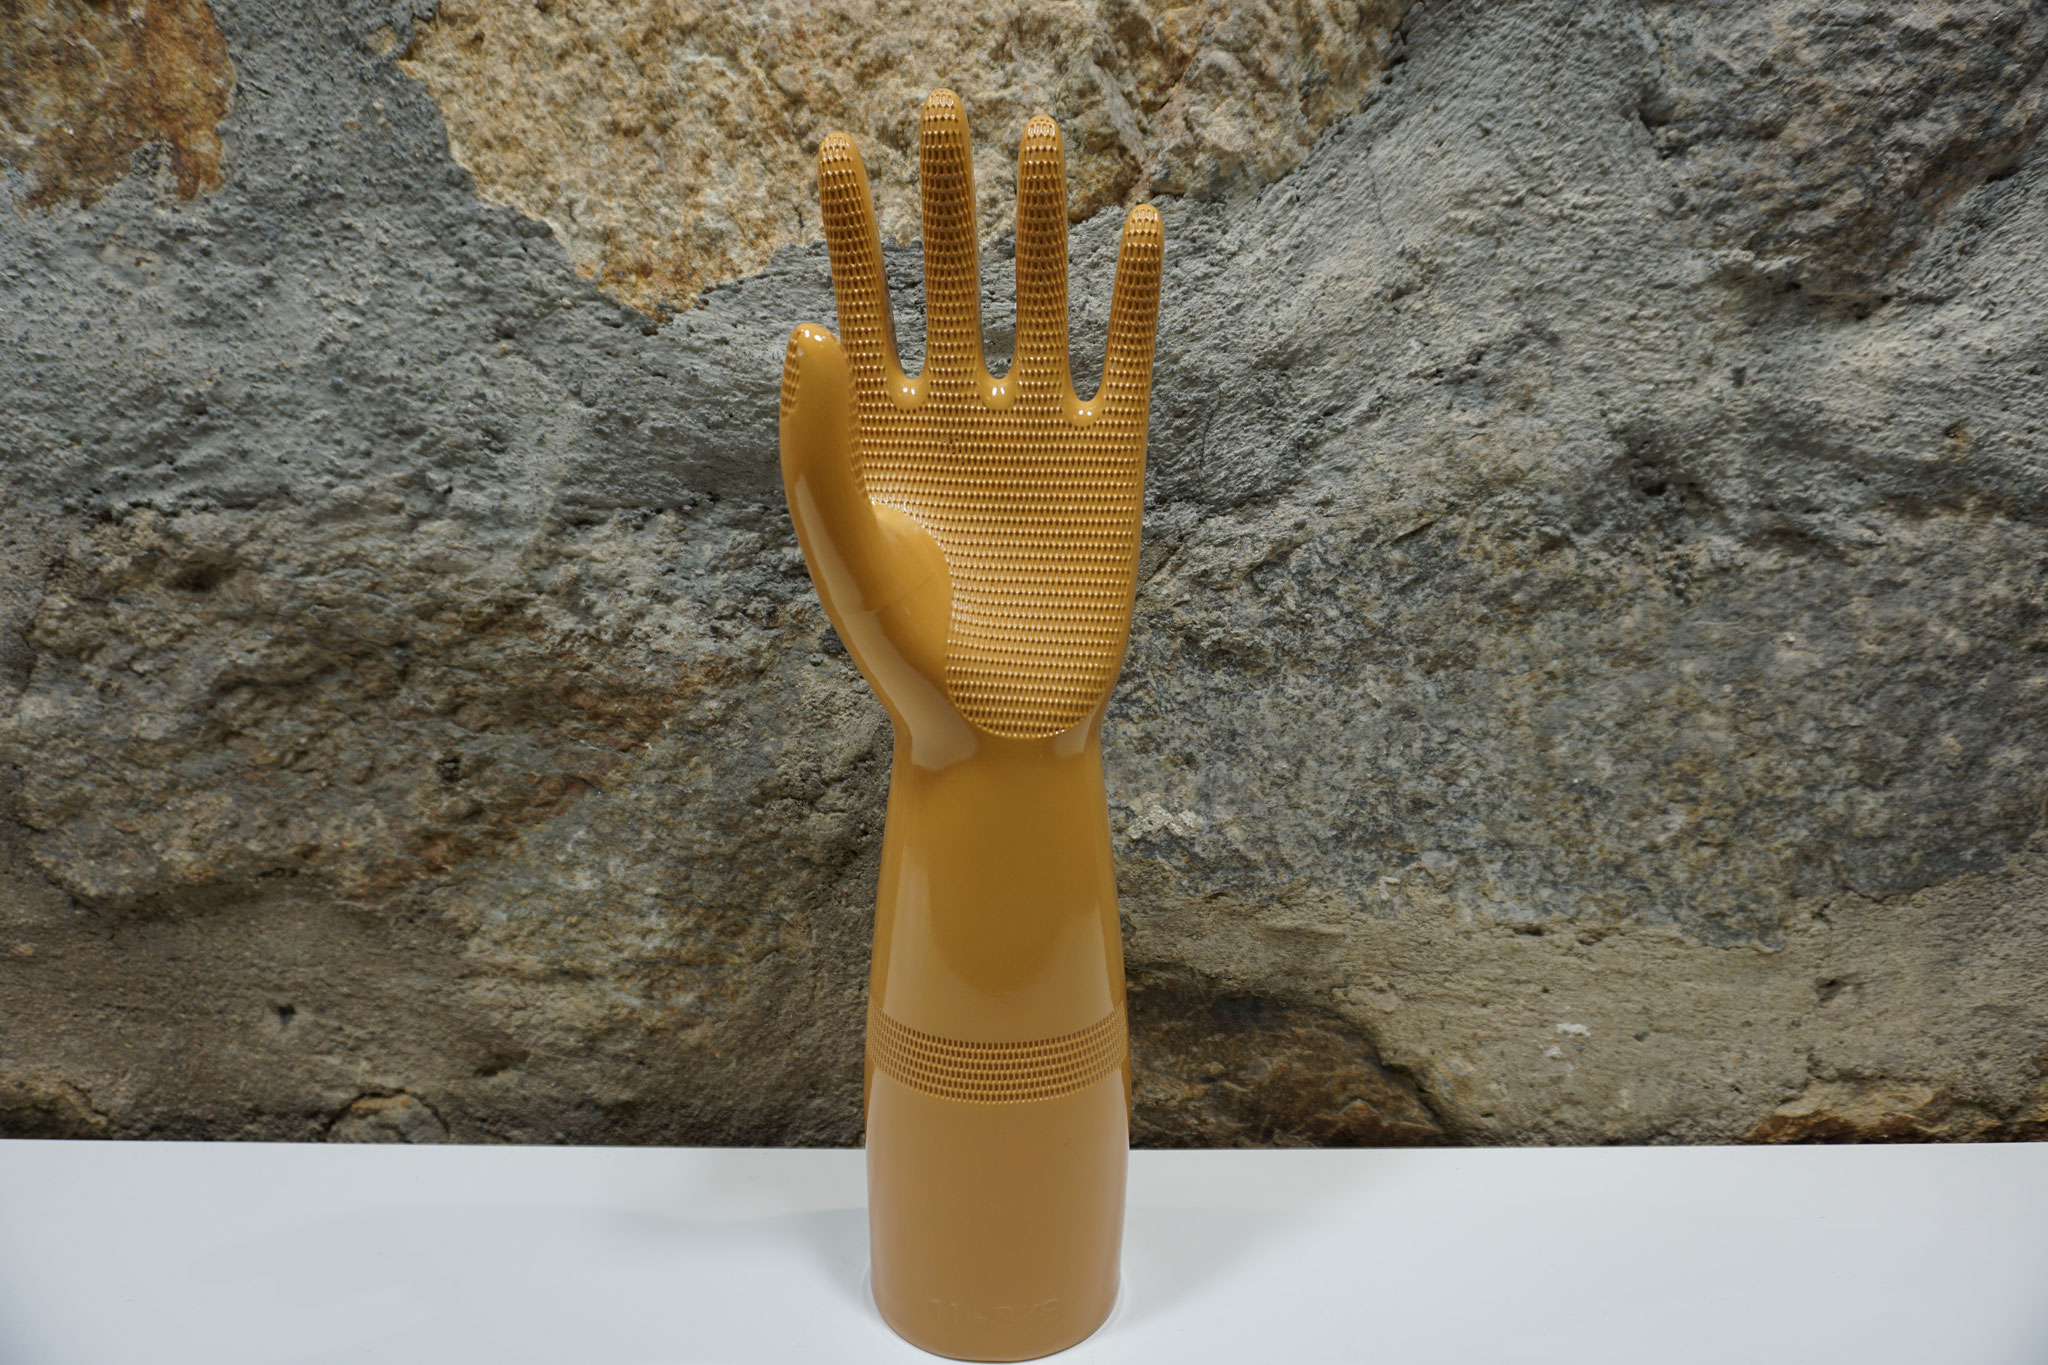 Porzellan Hand, Ockerfarbig, 39 cm hoch, Top Zustand, etwa 1970er/1980er Jahre. Preis: 35,00 €